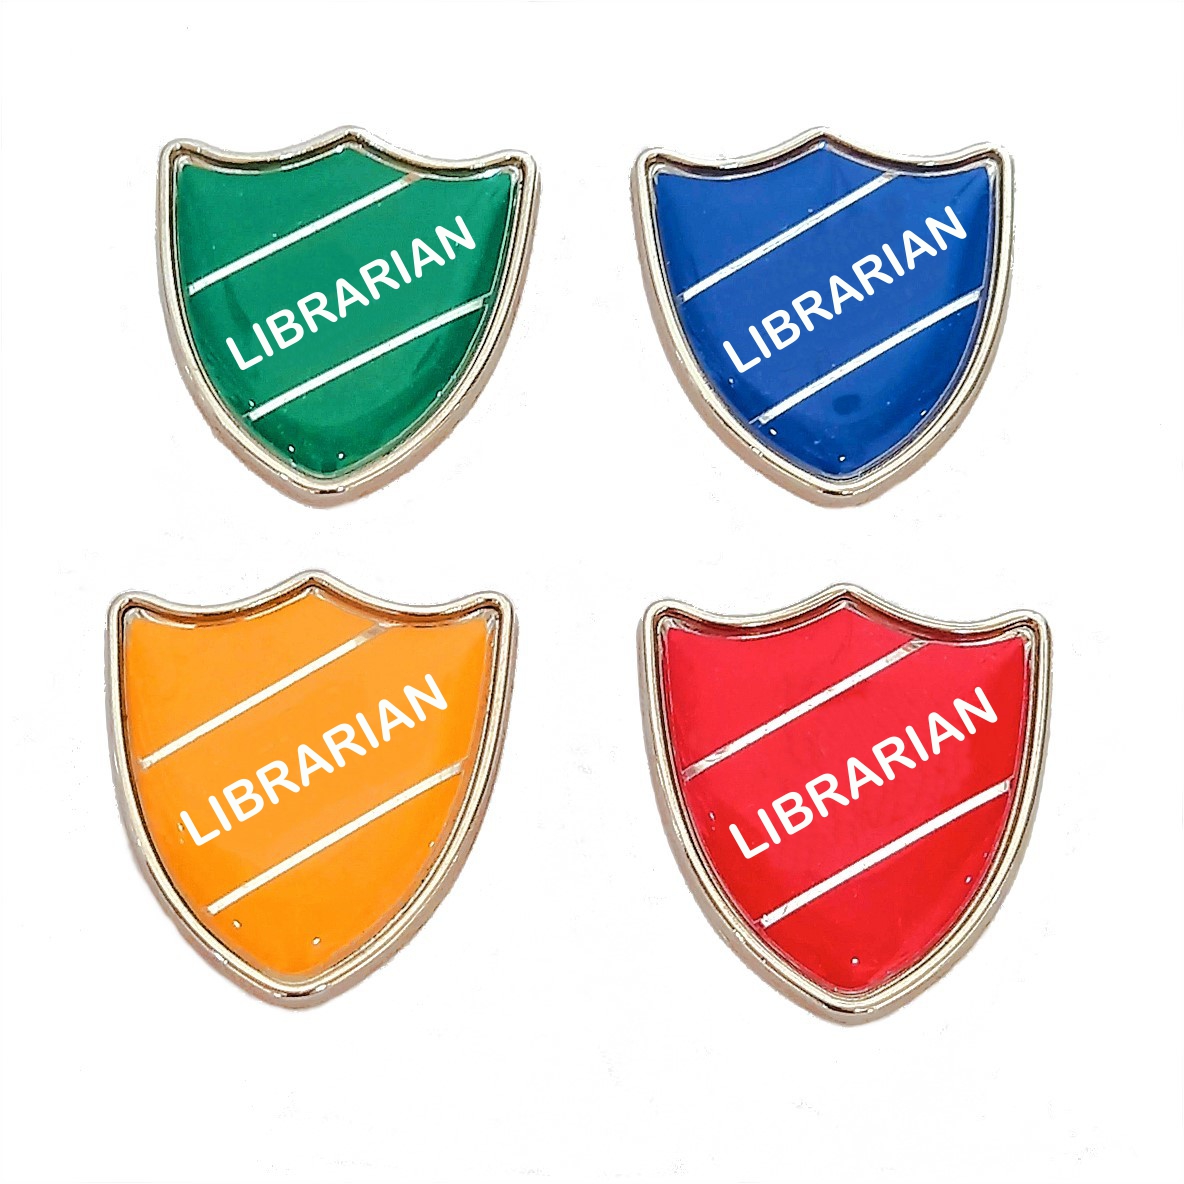 LIBRARIAN shield badge